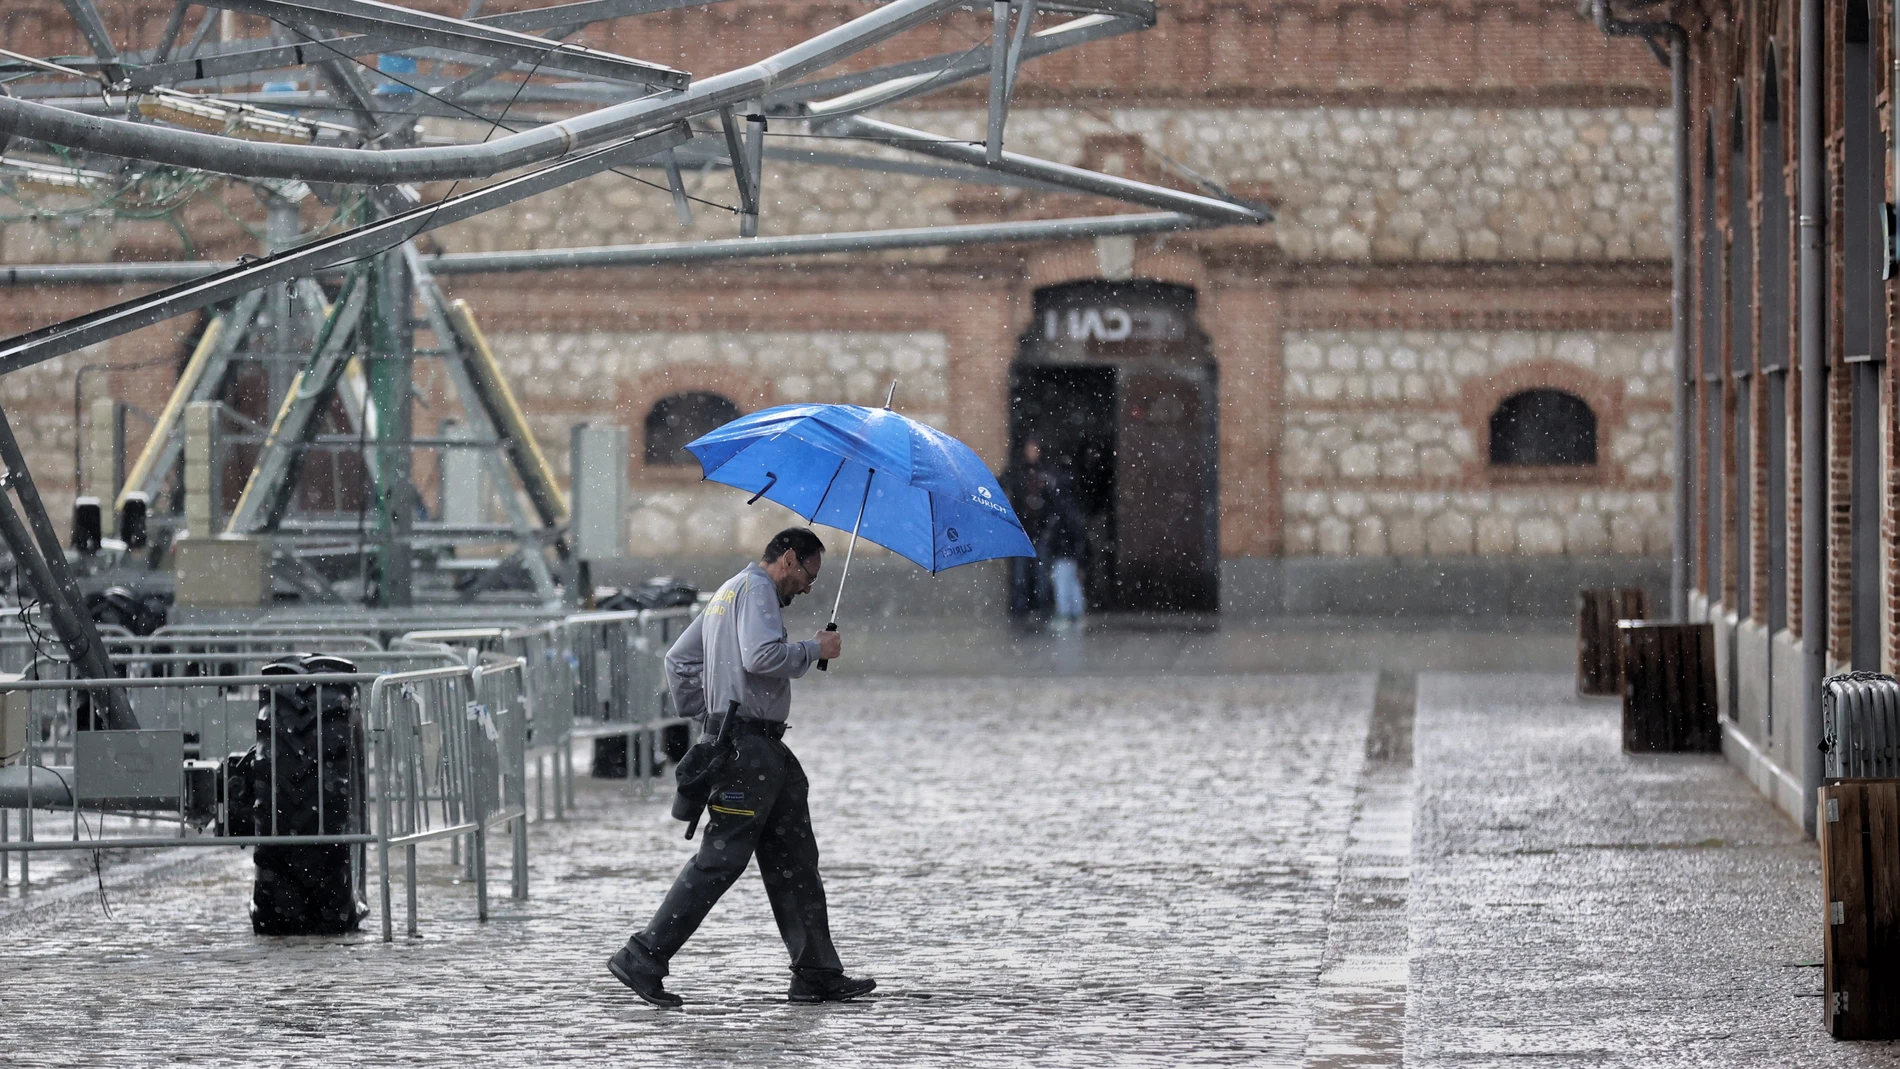 Una persona camina con paraguas en Madrid bajo una tormenta de verano